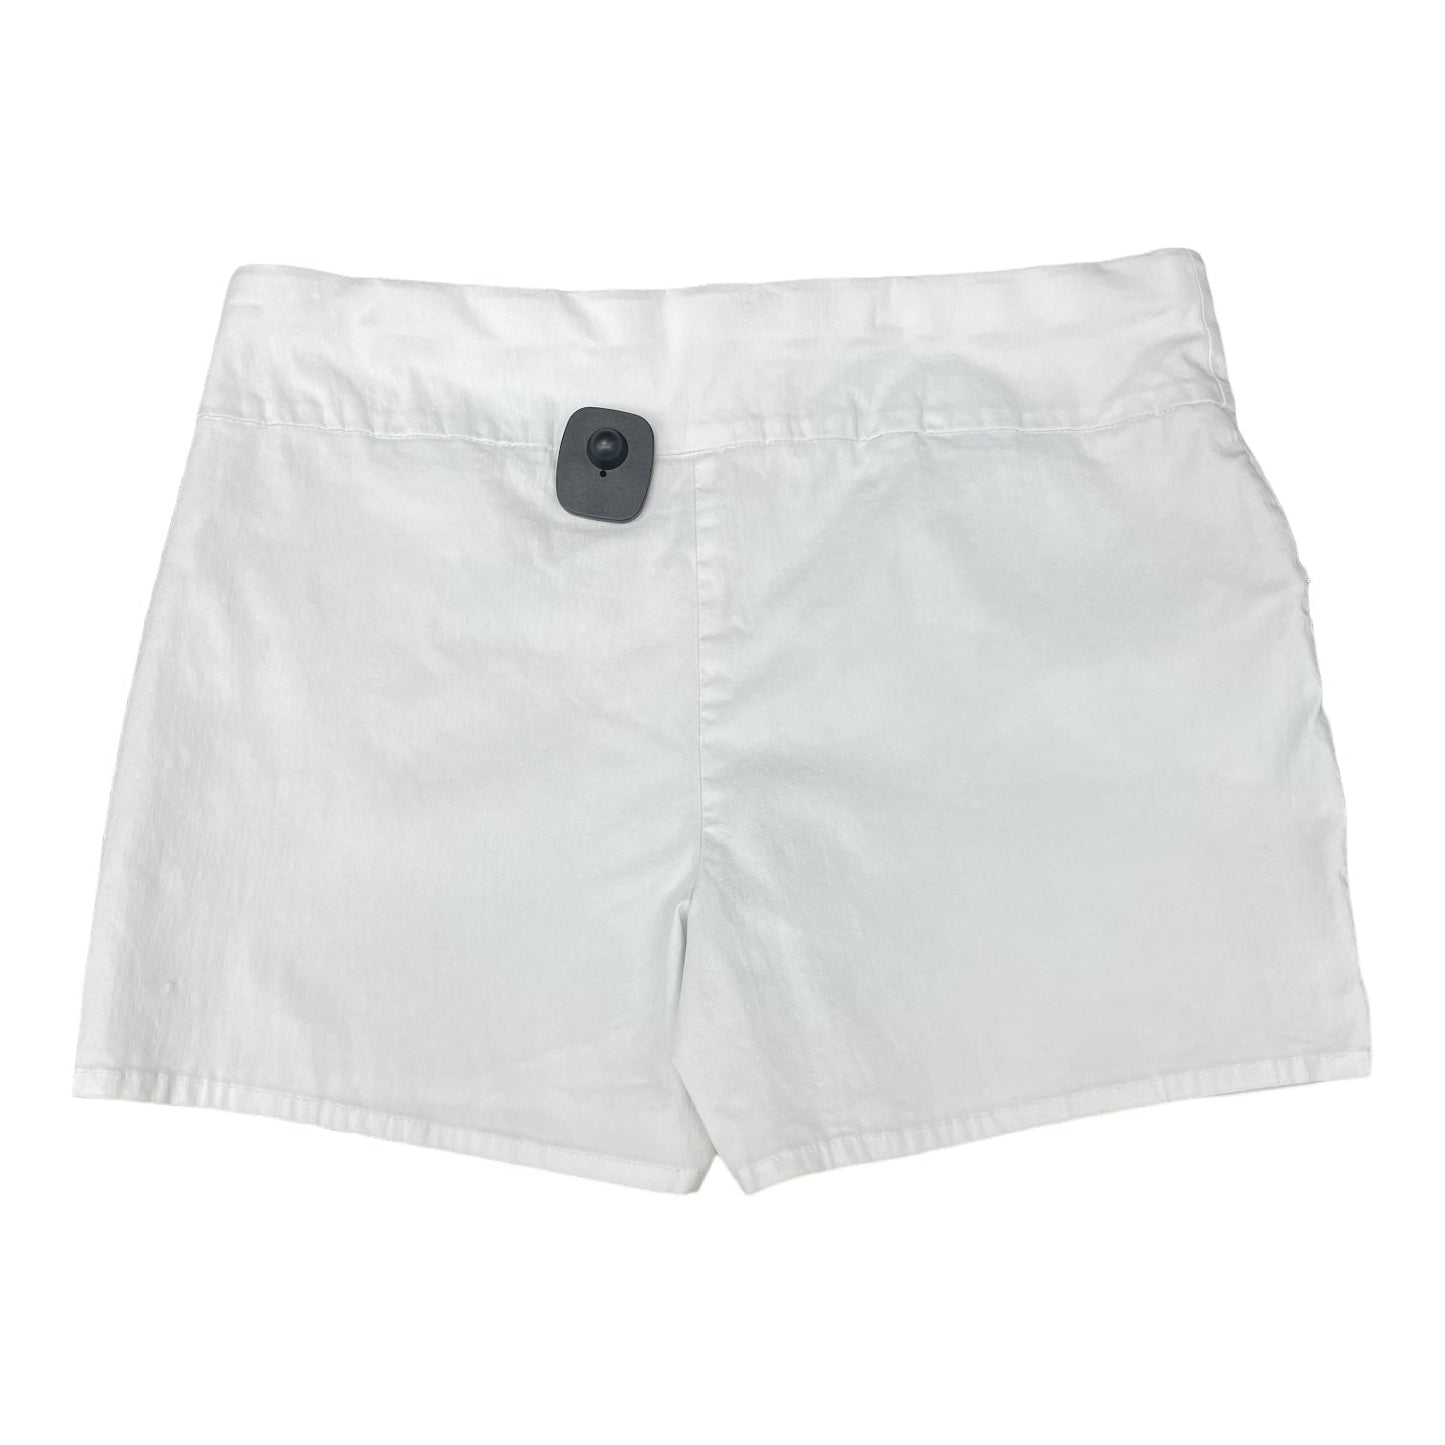 White Shorts Inc, Size 14